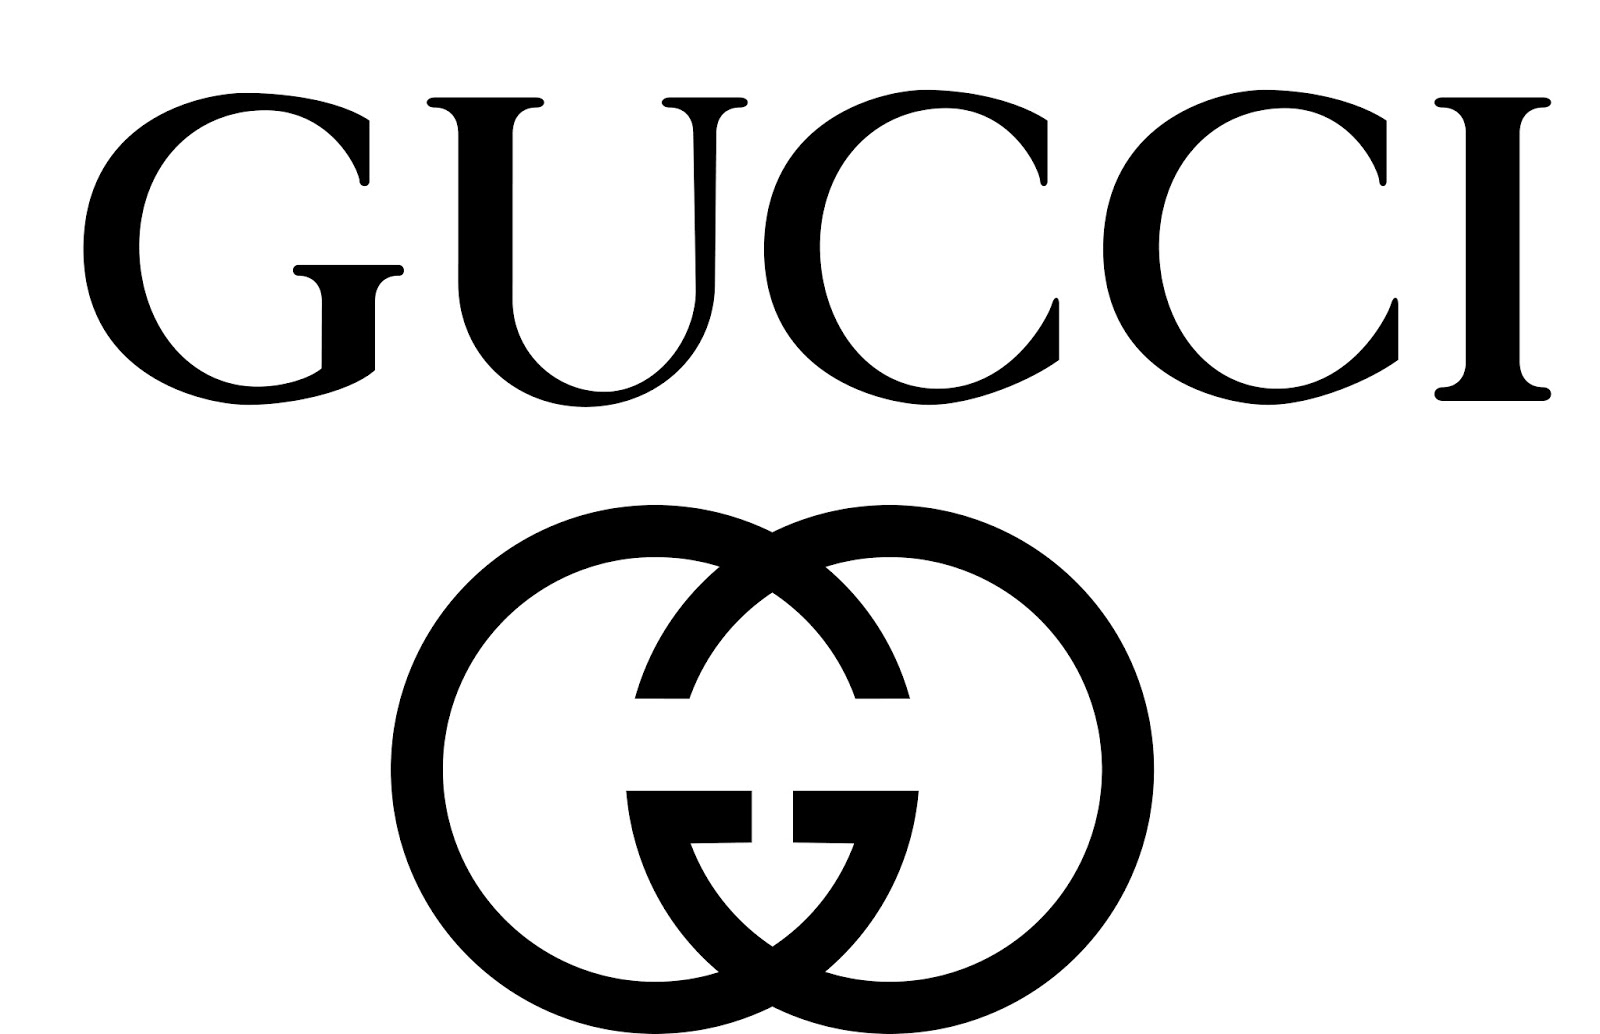 Logo GG được bắt nguồn từ tên của người sáng lập ra thương hiệu Guccio Gucci